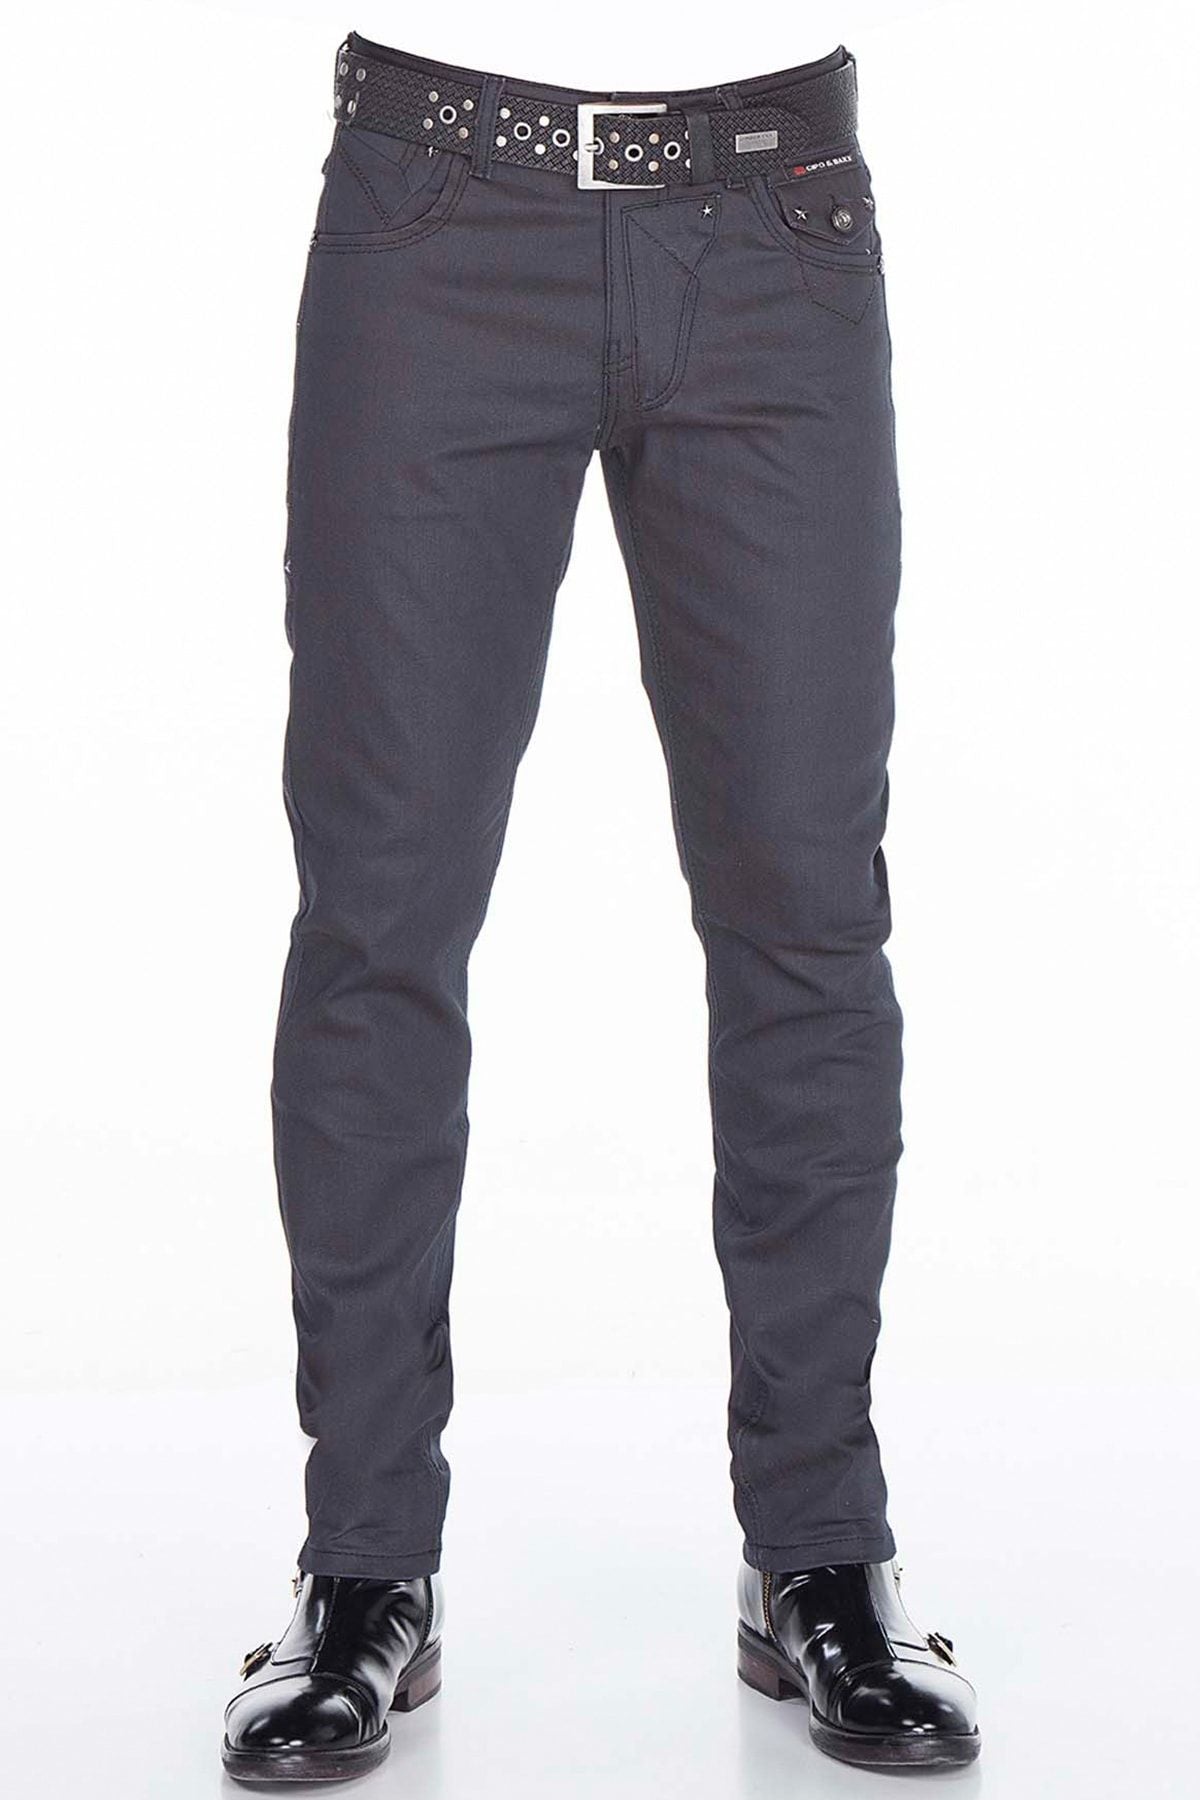 CD398 Comfortabele jeans voor heren in een moderne look